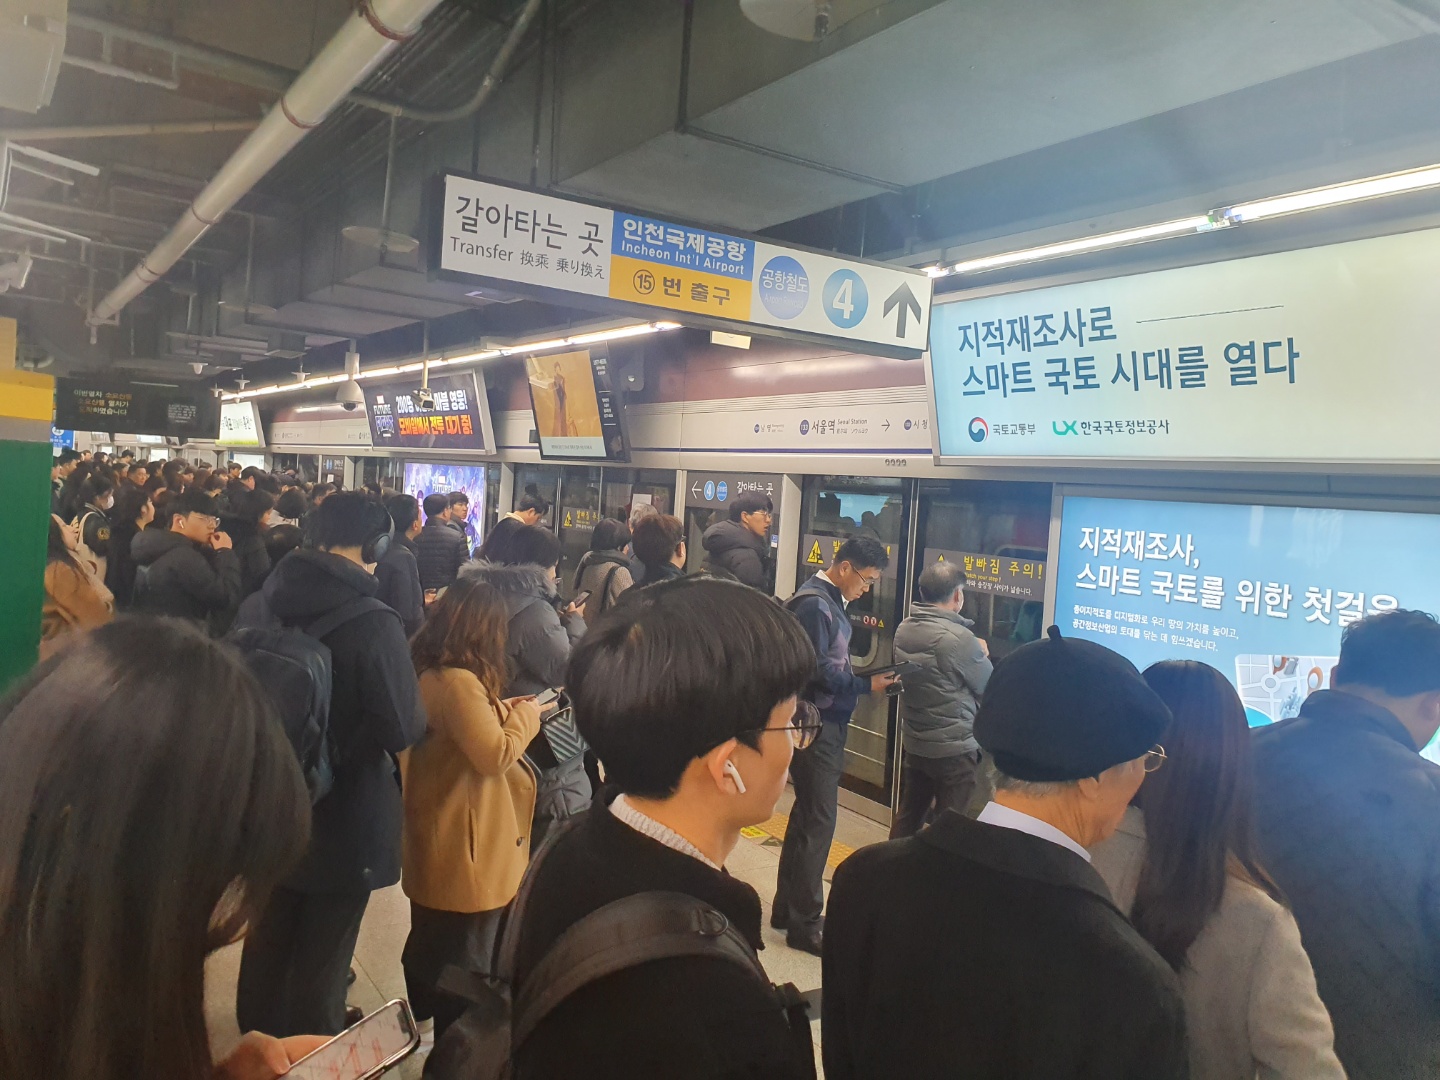 21일 지하철 1호선에서 승객들이 지연된 열차를 기다리고 있다. <사진=tbs>